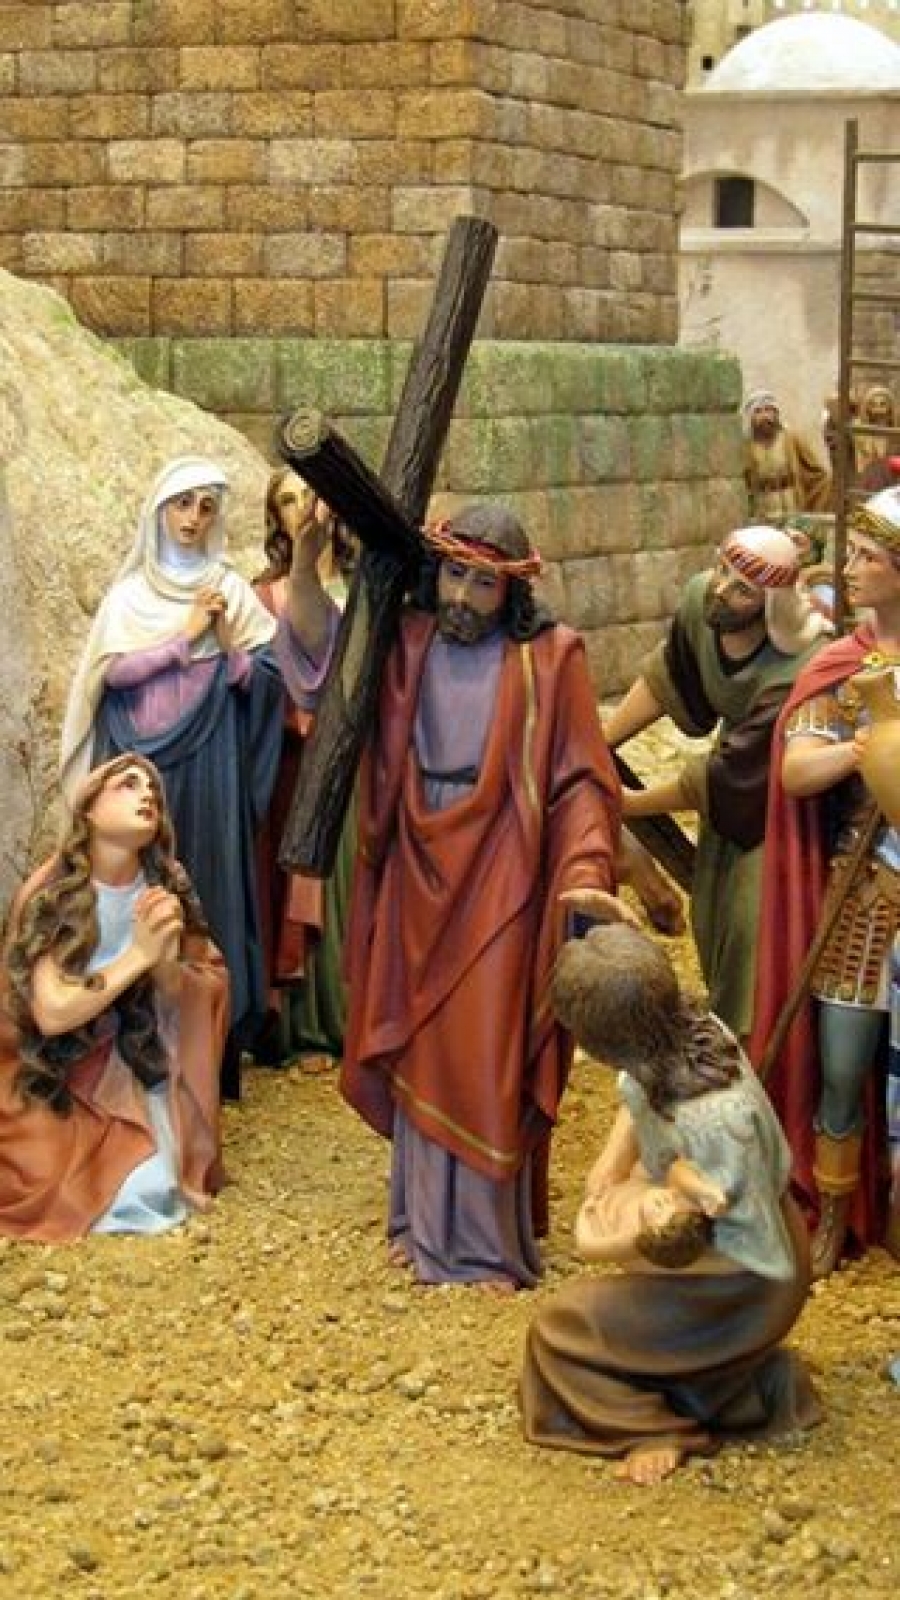 El sábado se inaugura la exposición de Dioramas de la Pasión del Señor en la parroquia de Hoyo de Manzanares